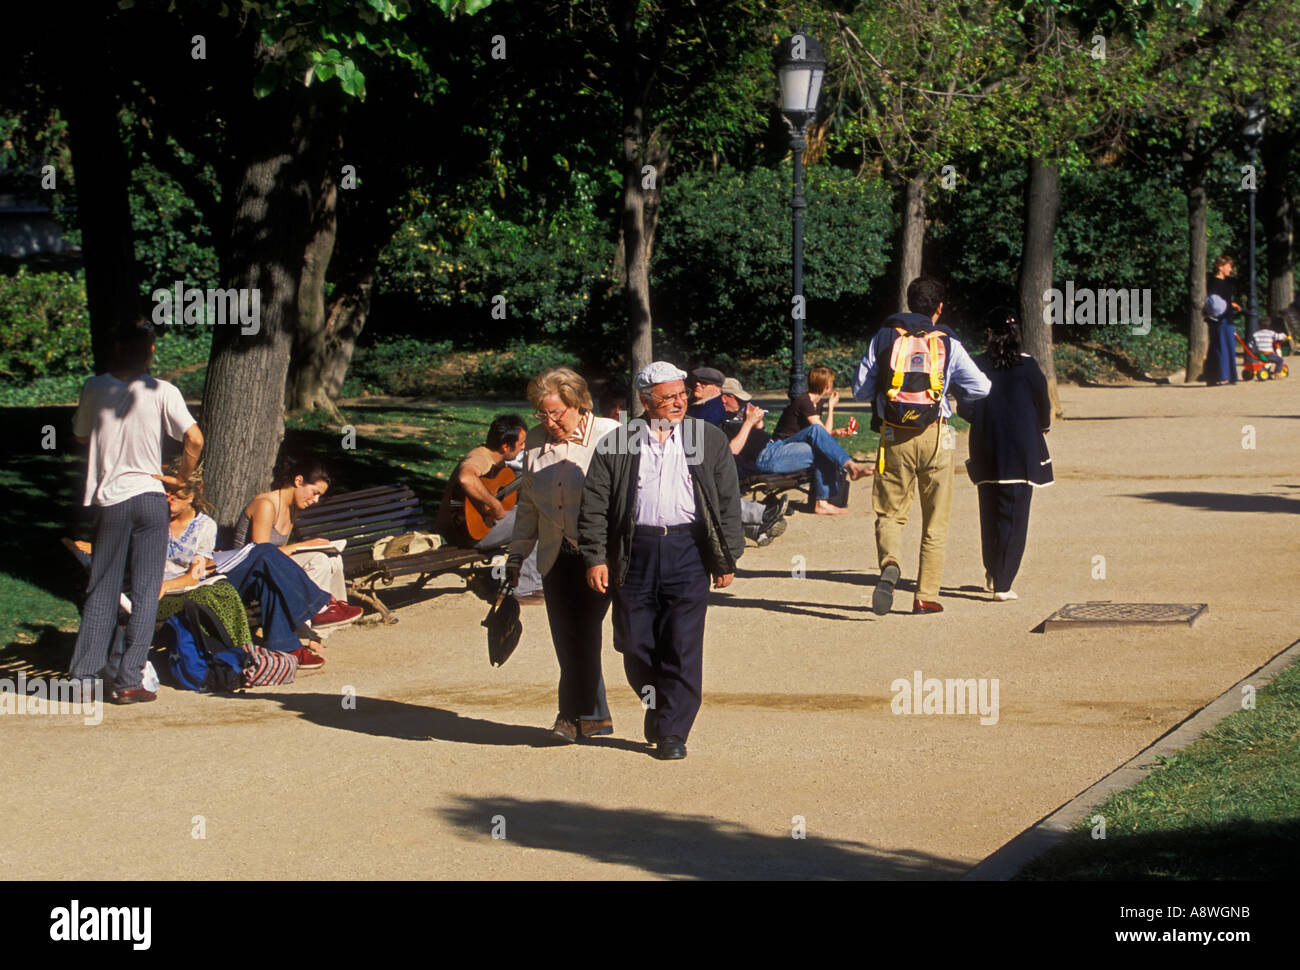 Spaniards, Spanish, mature, senior citizens, men, women, walking in park, La Ciutadella, La Ciutadella Park, Barcelona, Barcelona Province, Spain Stock Photo